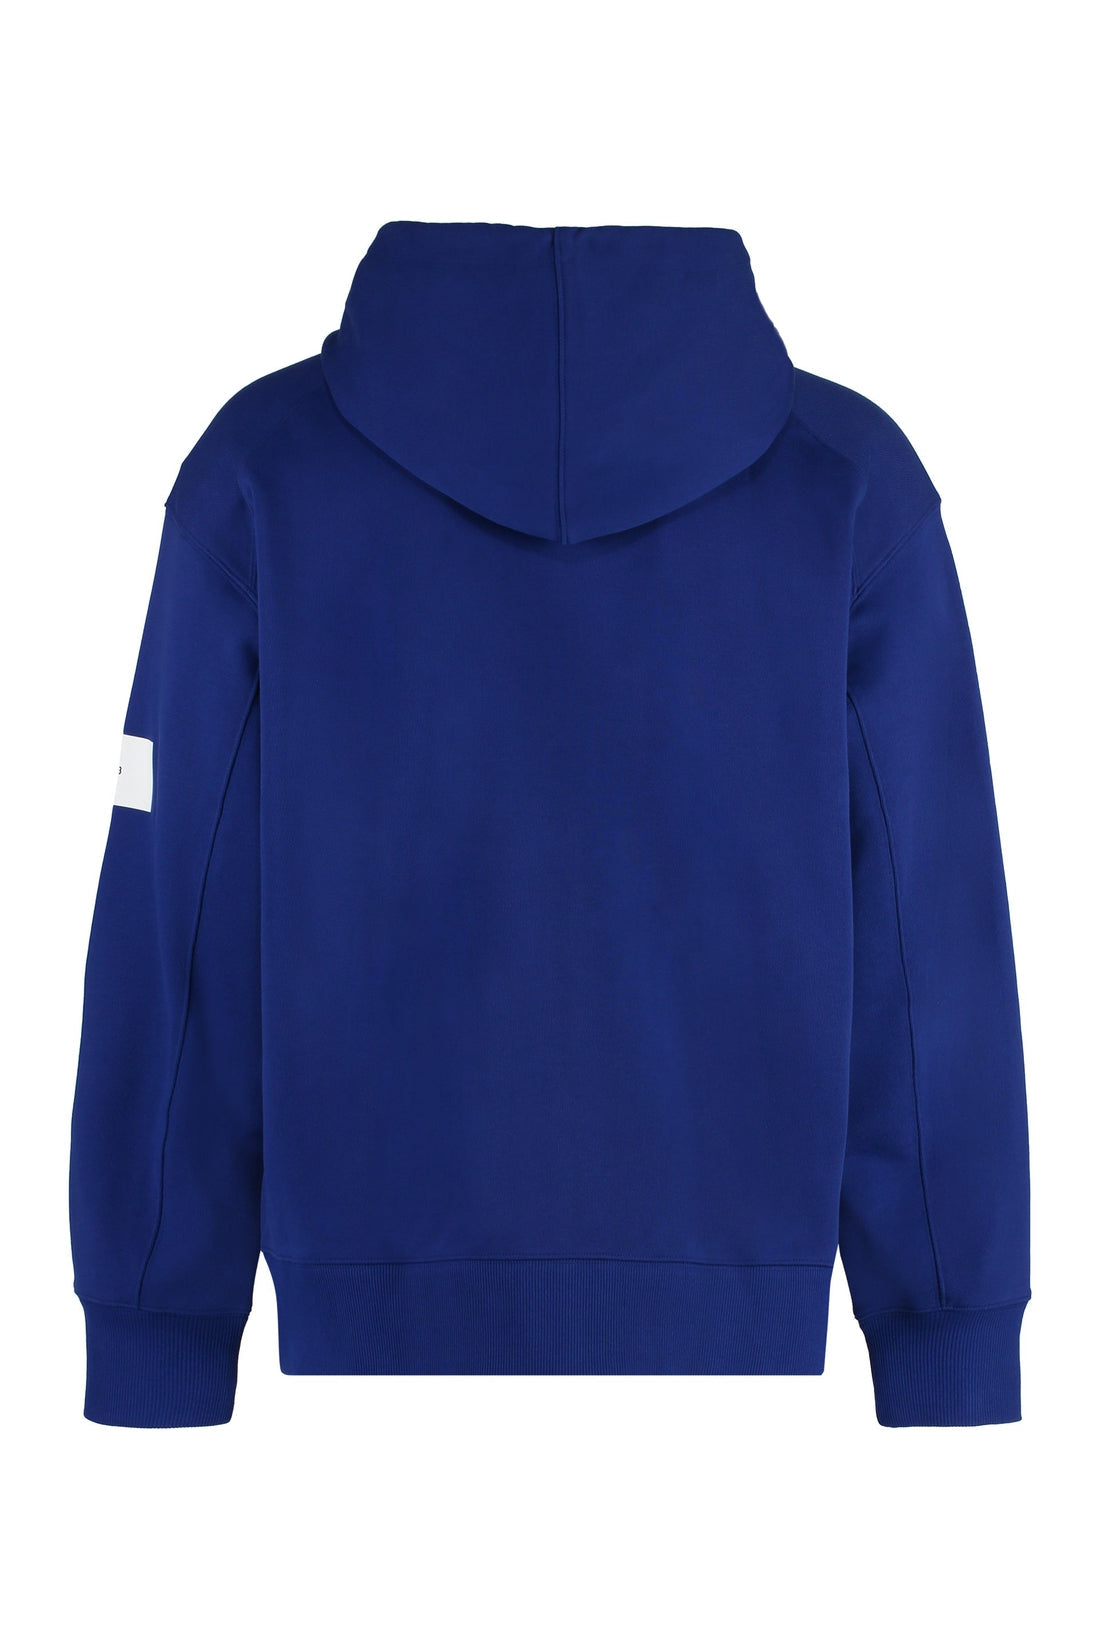 adidas Y-3-OUTLET-SALE-Full zip hoodie-ARCHIVIST